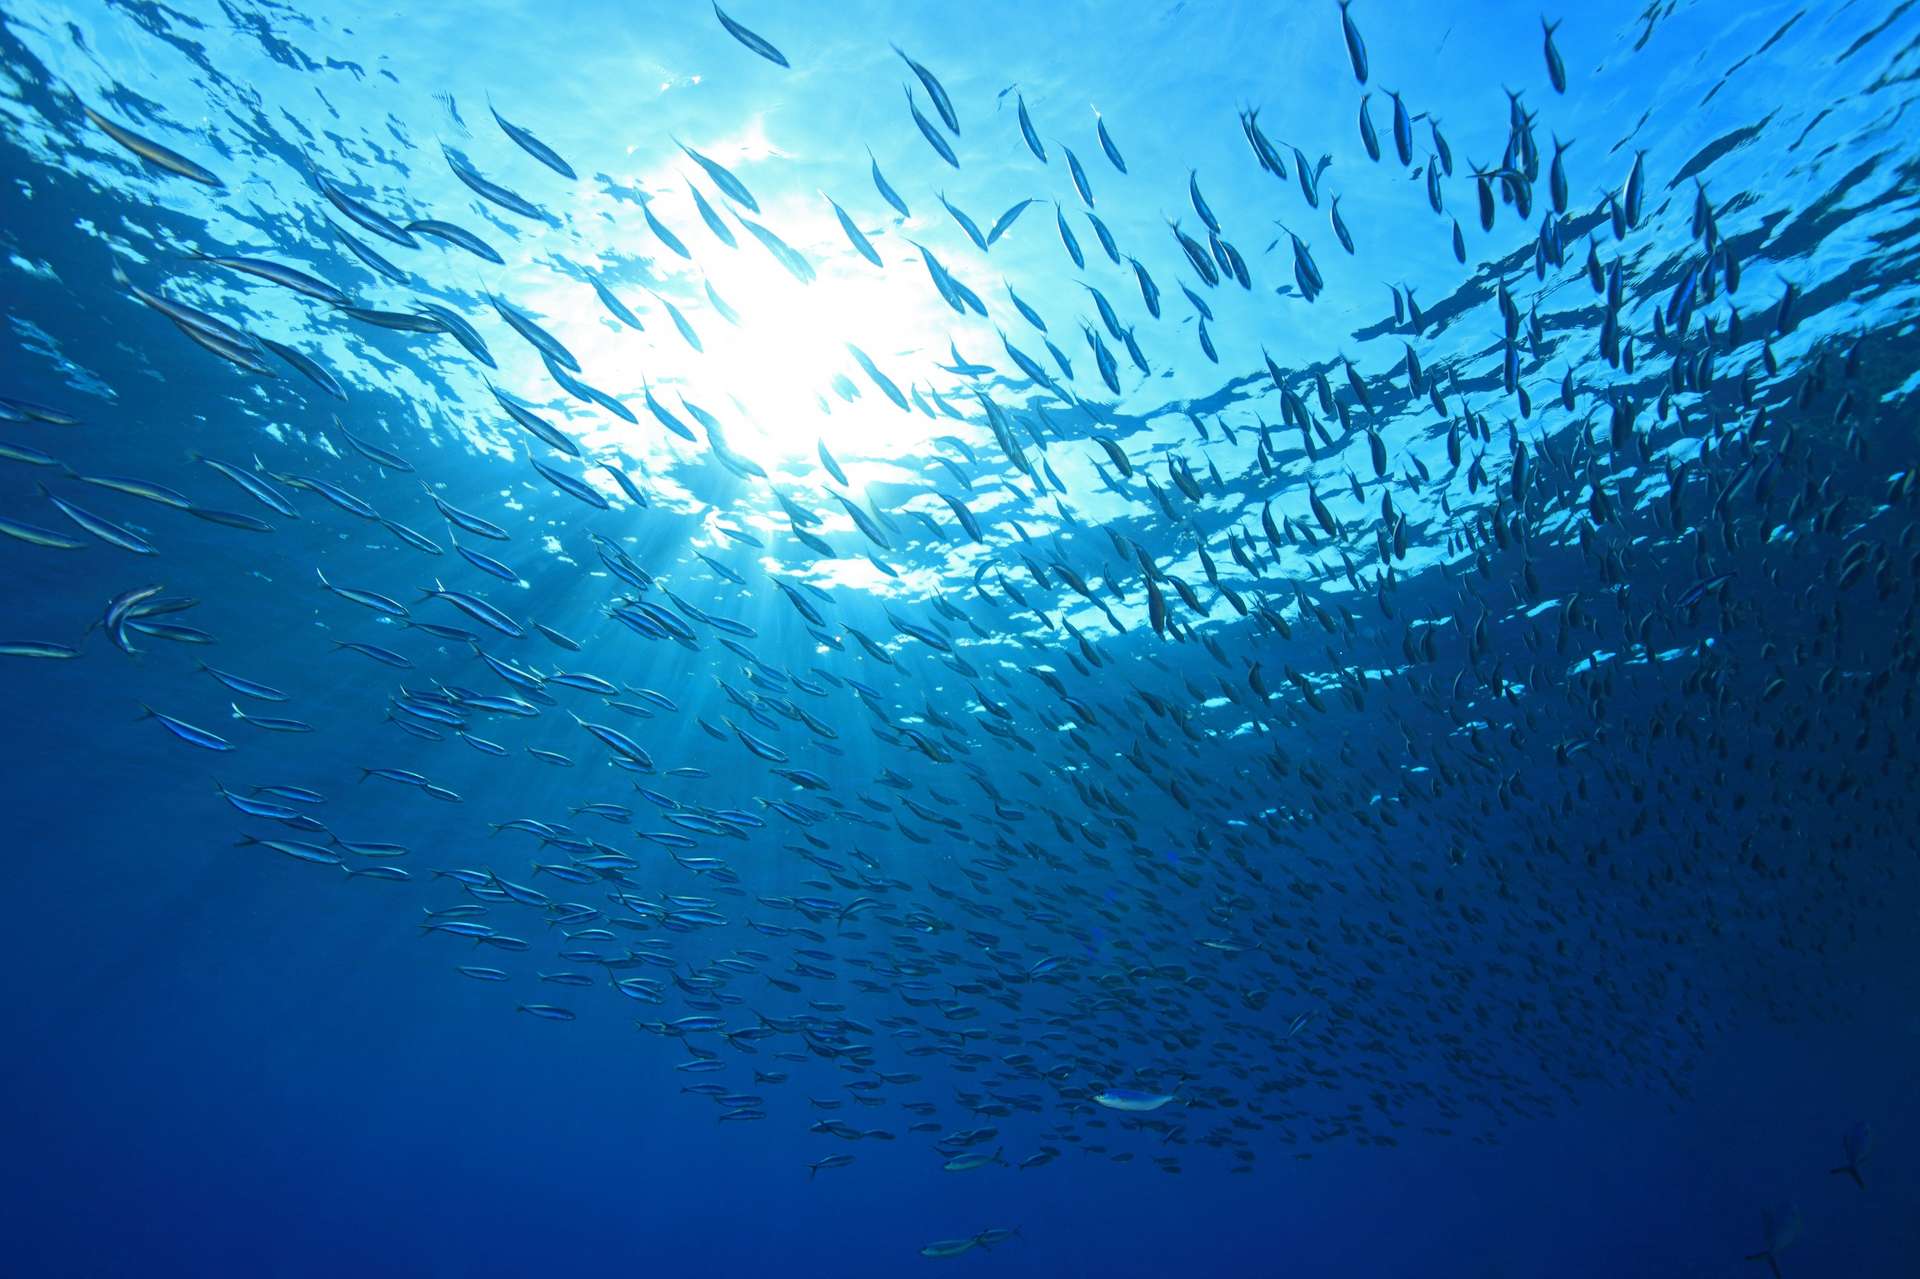 Le plancton est en train de disparaître massivement dans les océans, prélude à un désastre